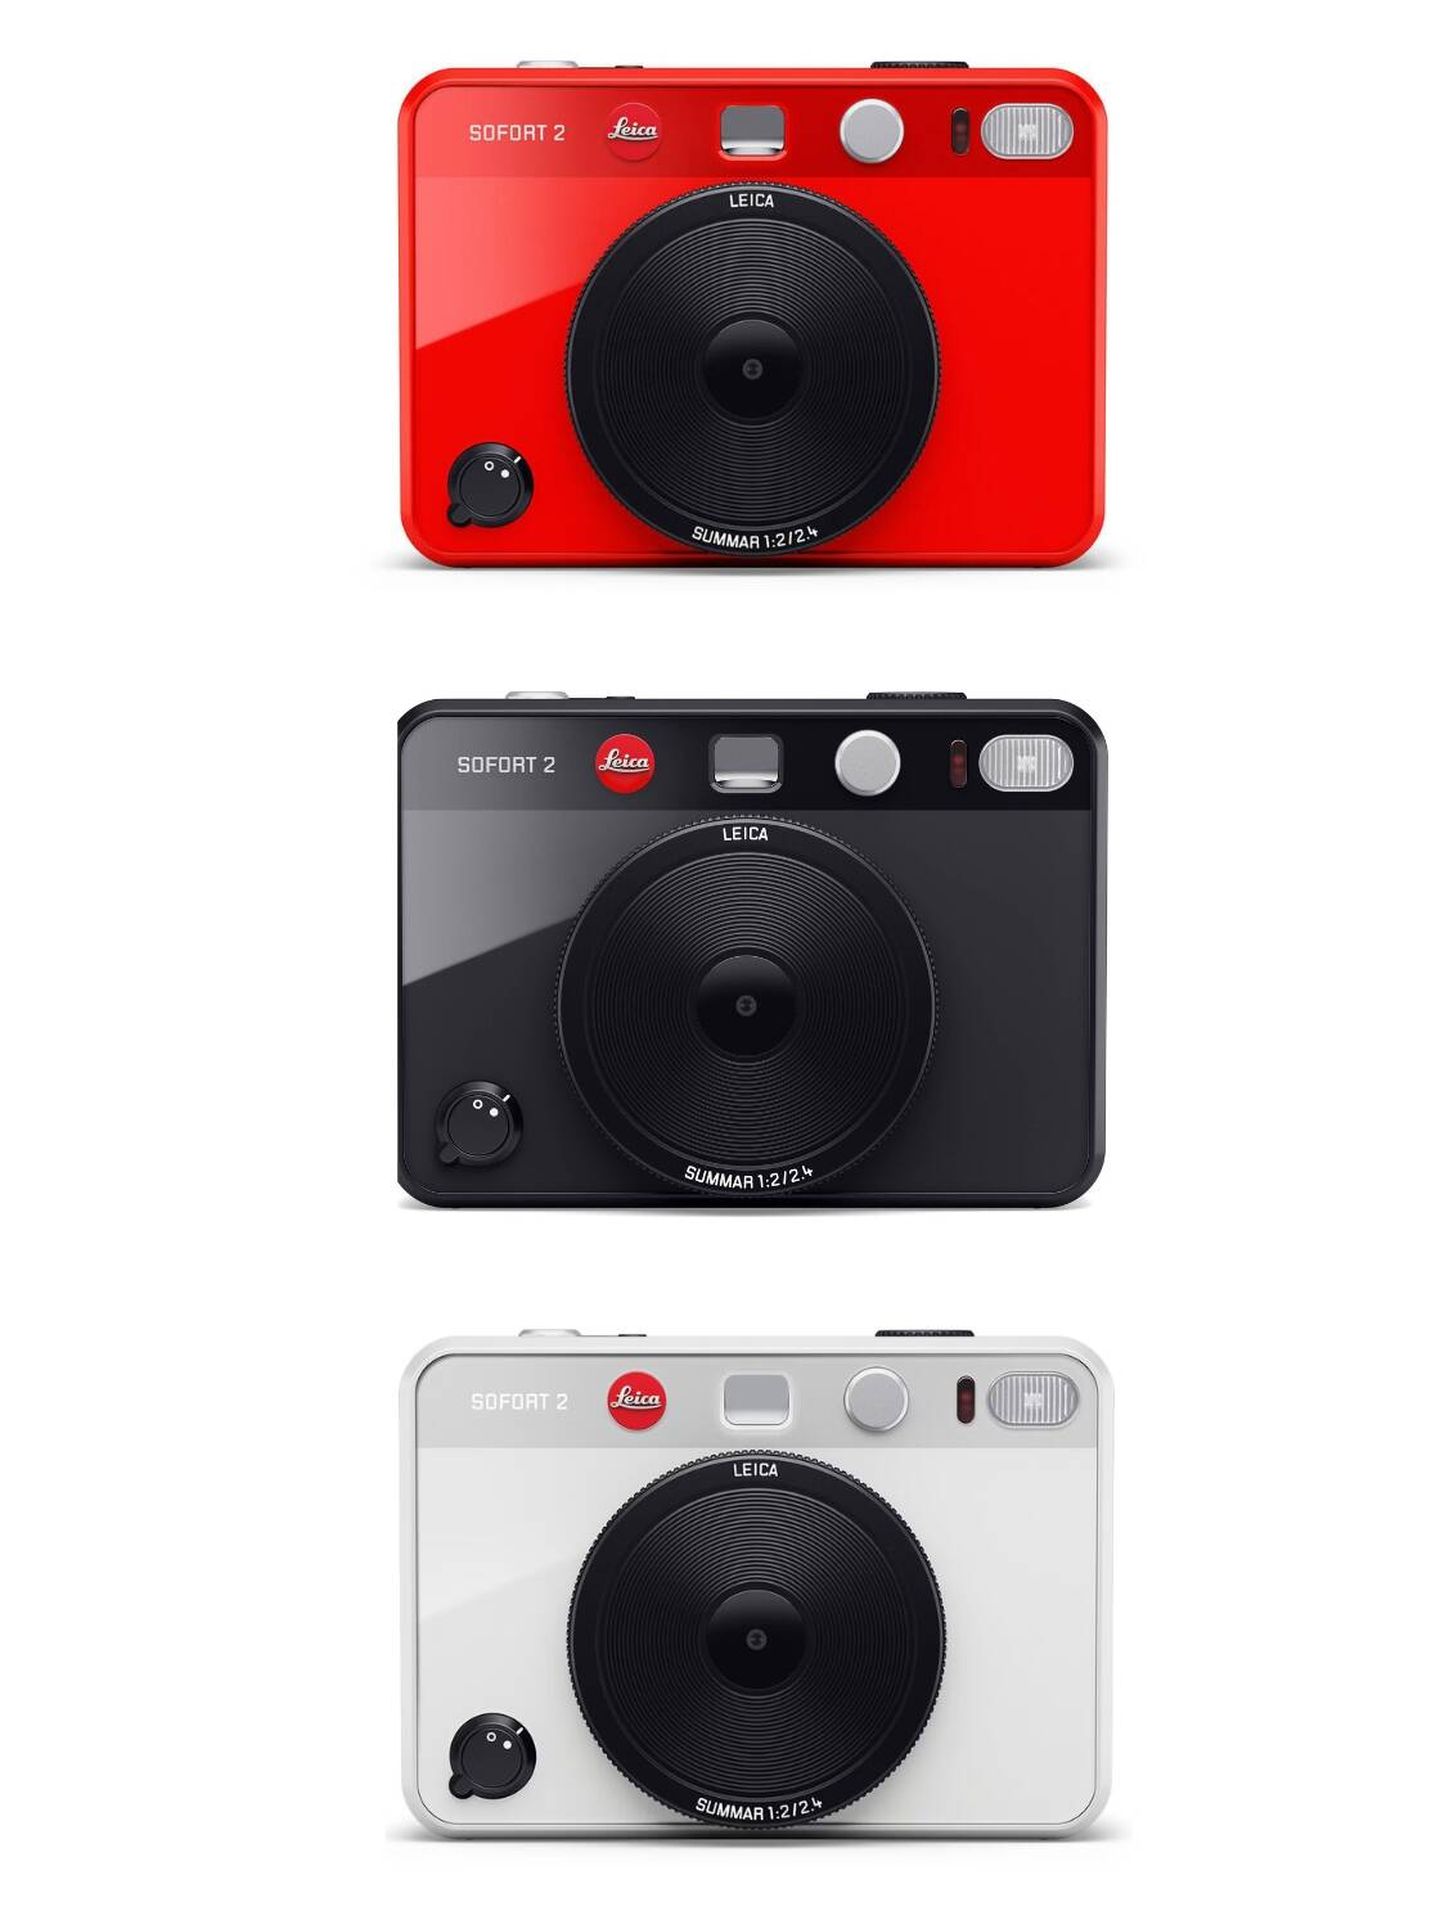 La Leica Sofort 2 en tres colores. (Cortesía)